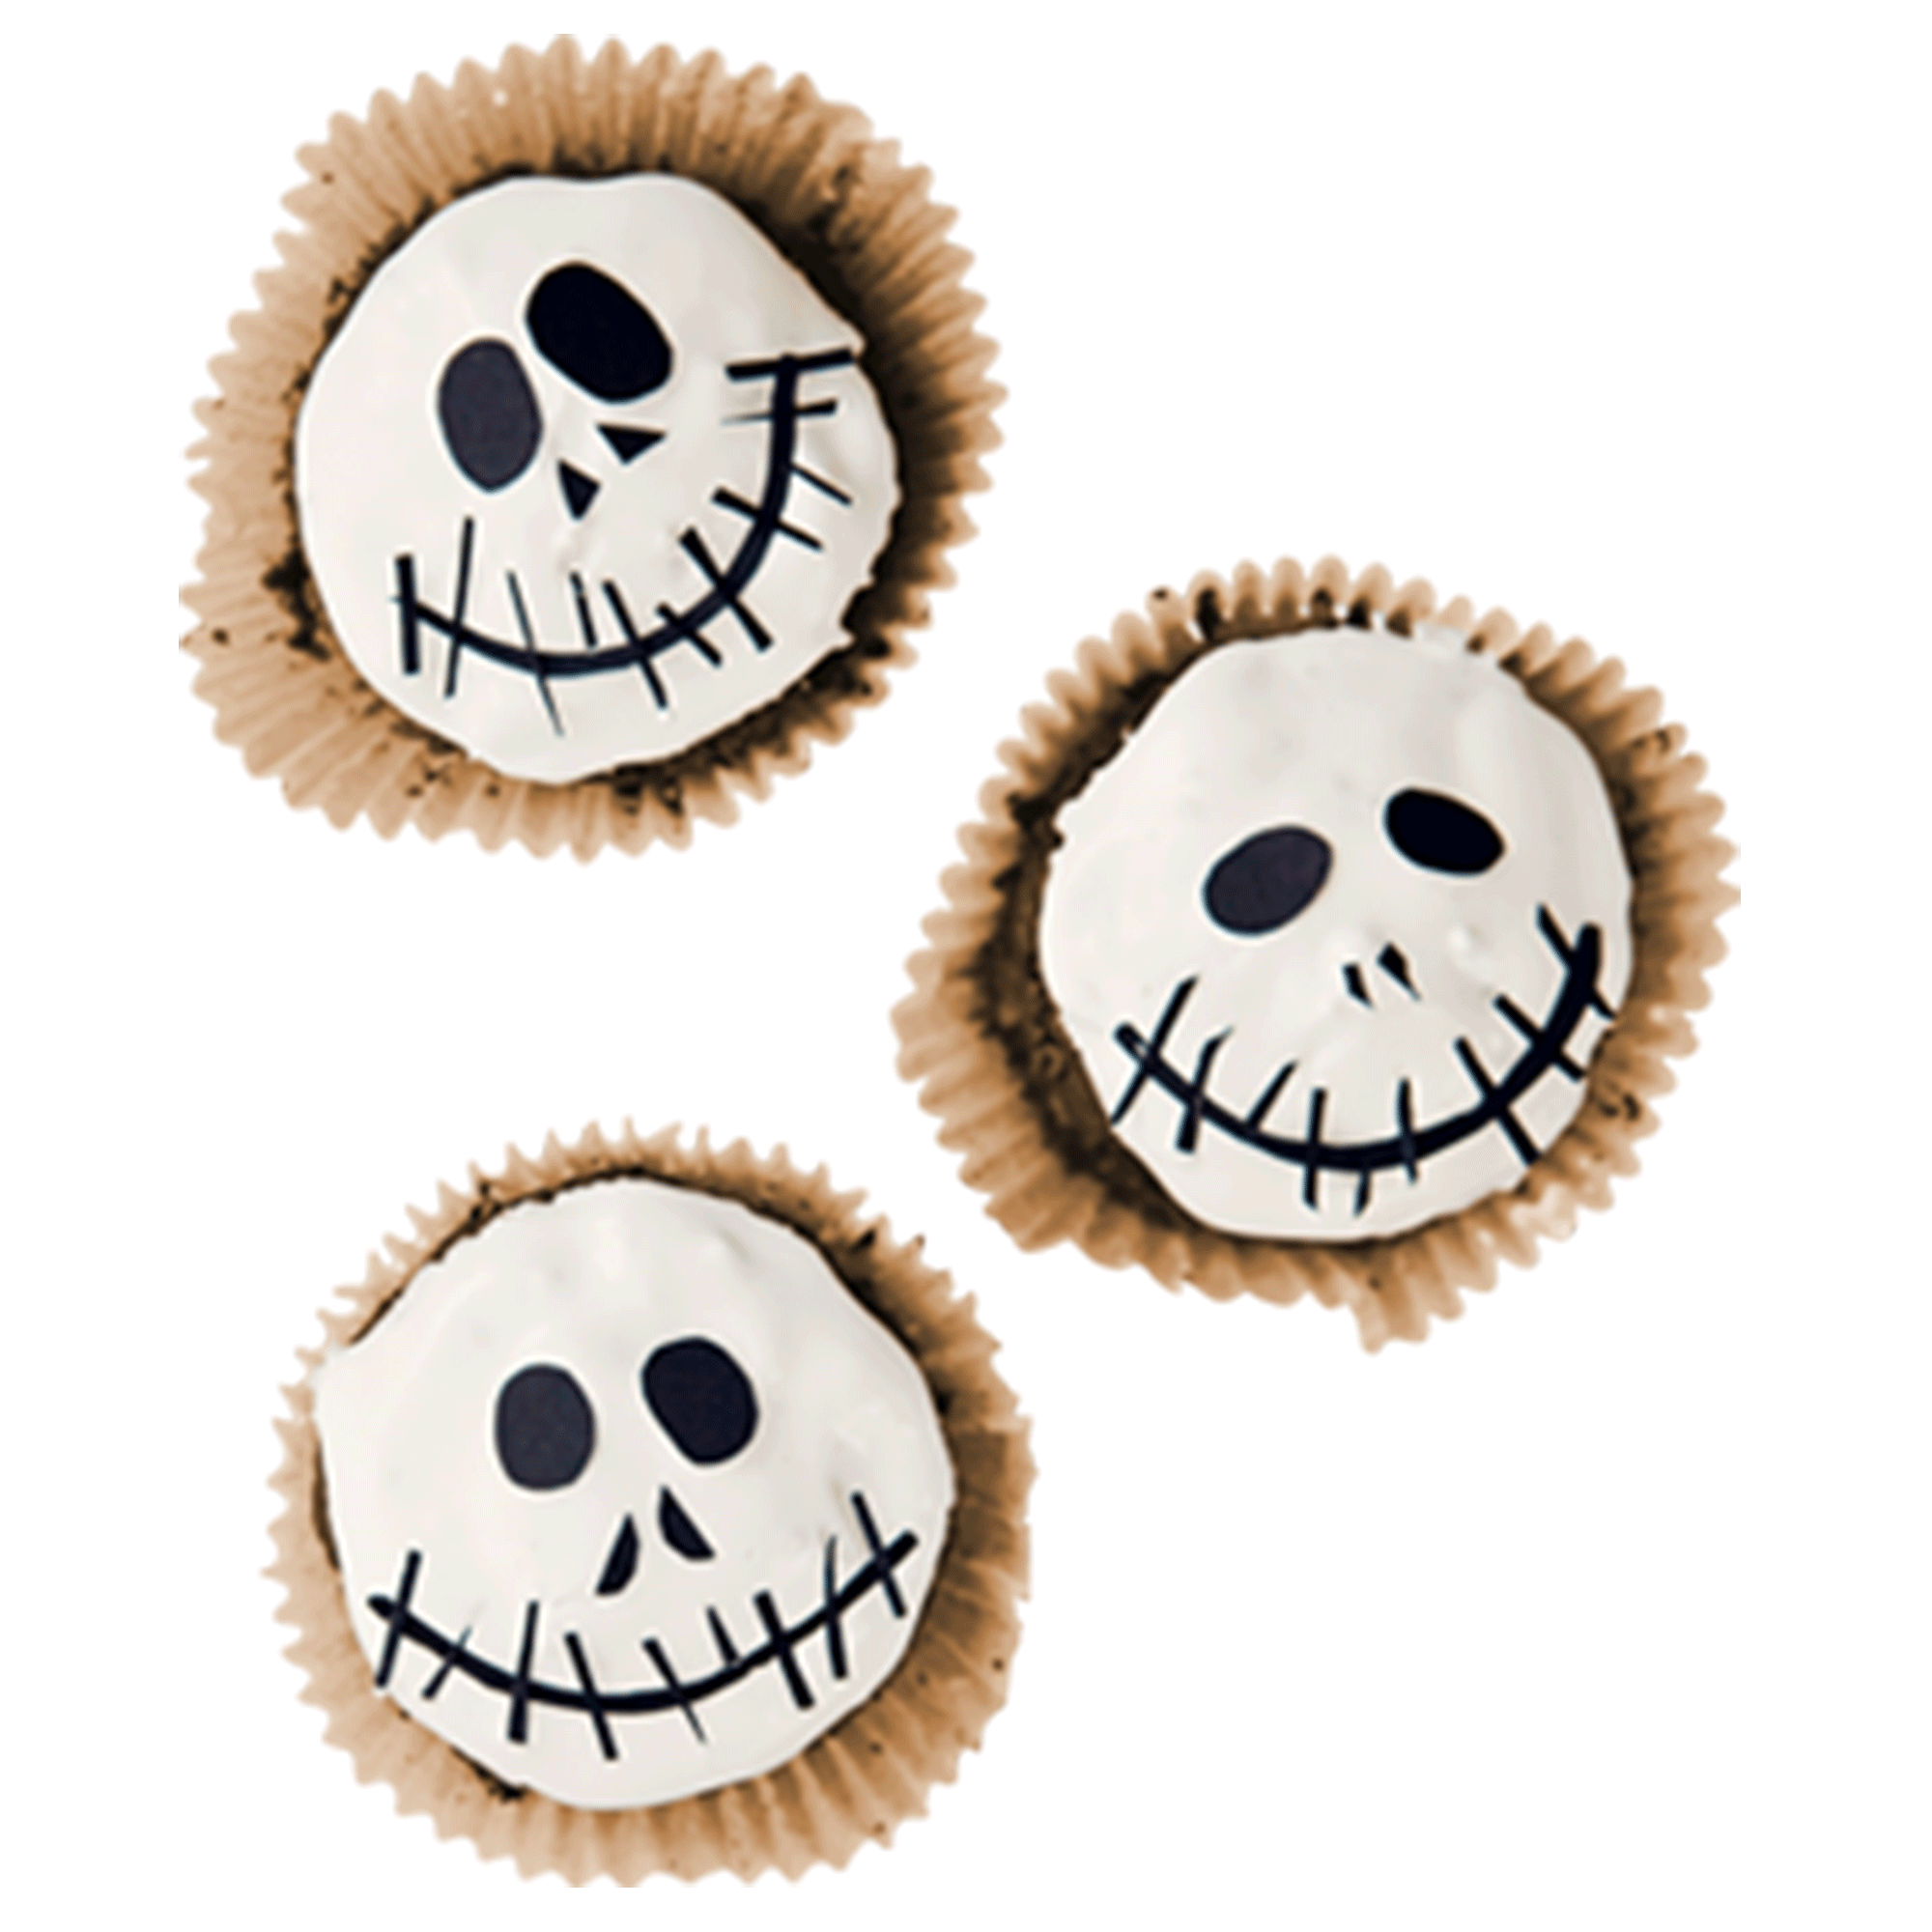 Skelett-Muffins, Muffins mit lachenden Totenschädeln